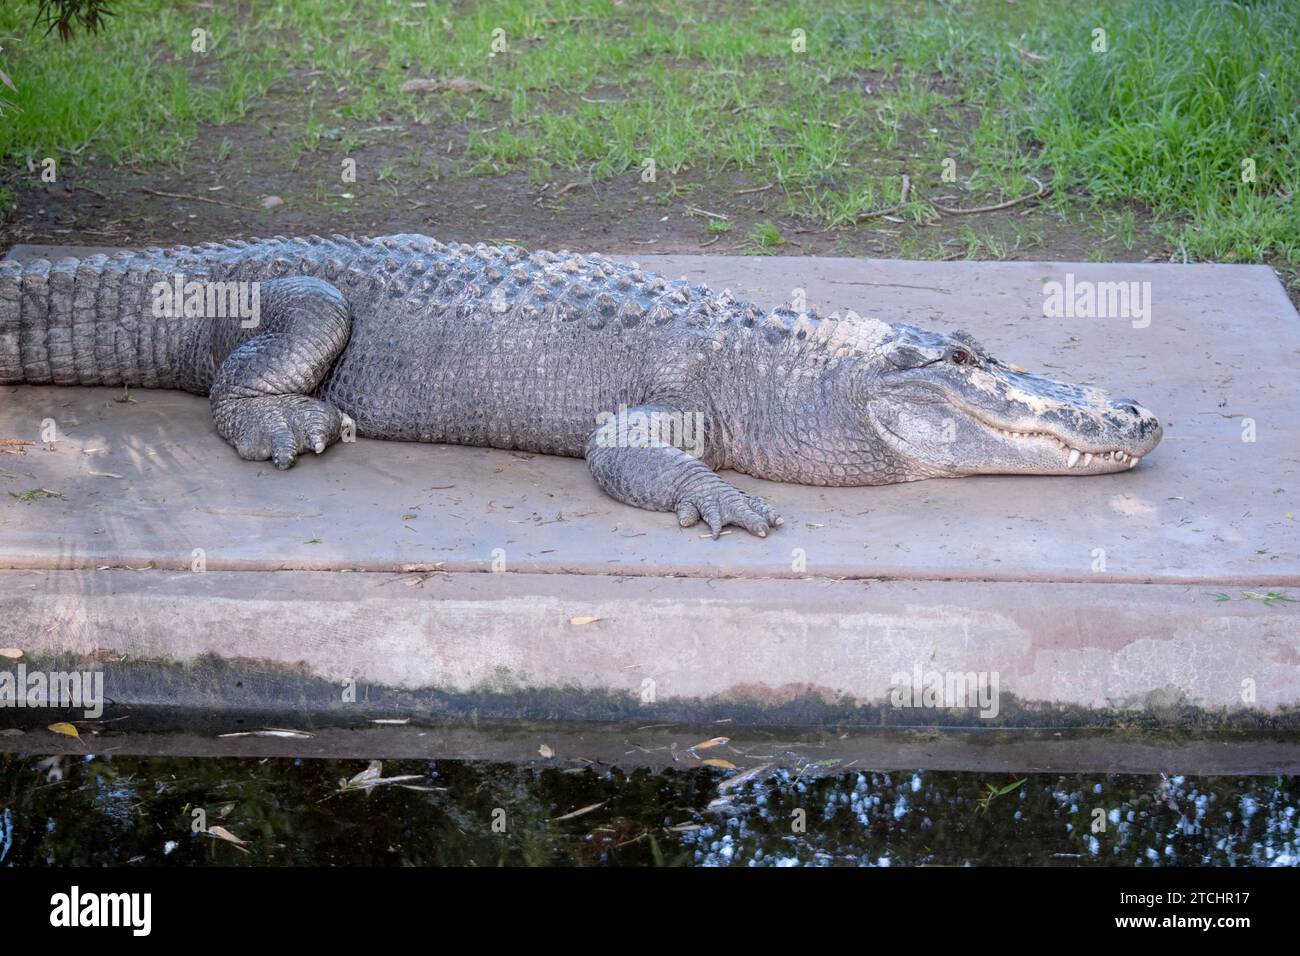 Alligatoren haben eine lange, abgerundete Schnauze mit nach oben gerichteten Nasenlöchern am Ende Stockfoto